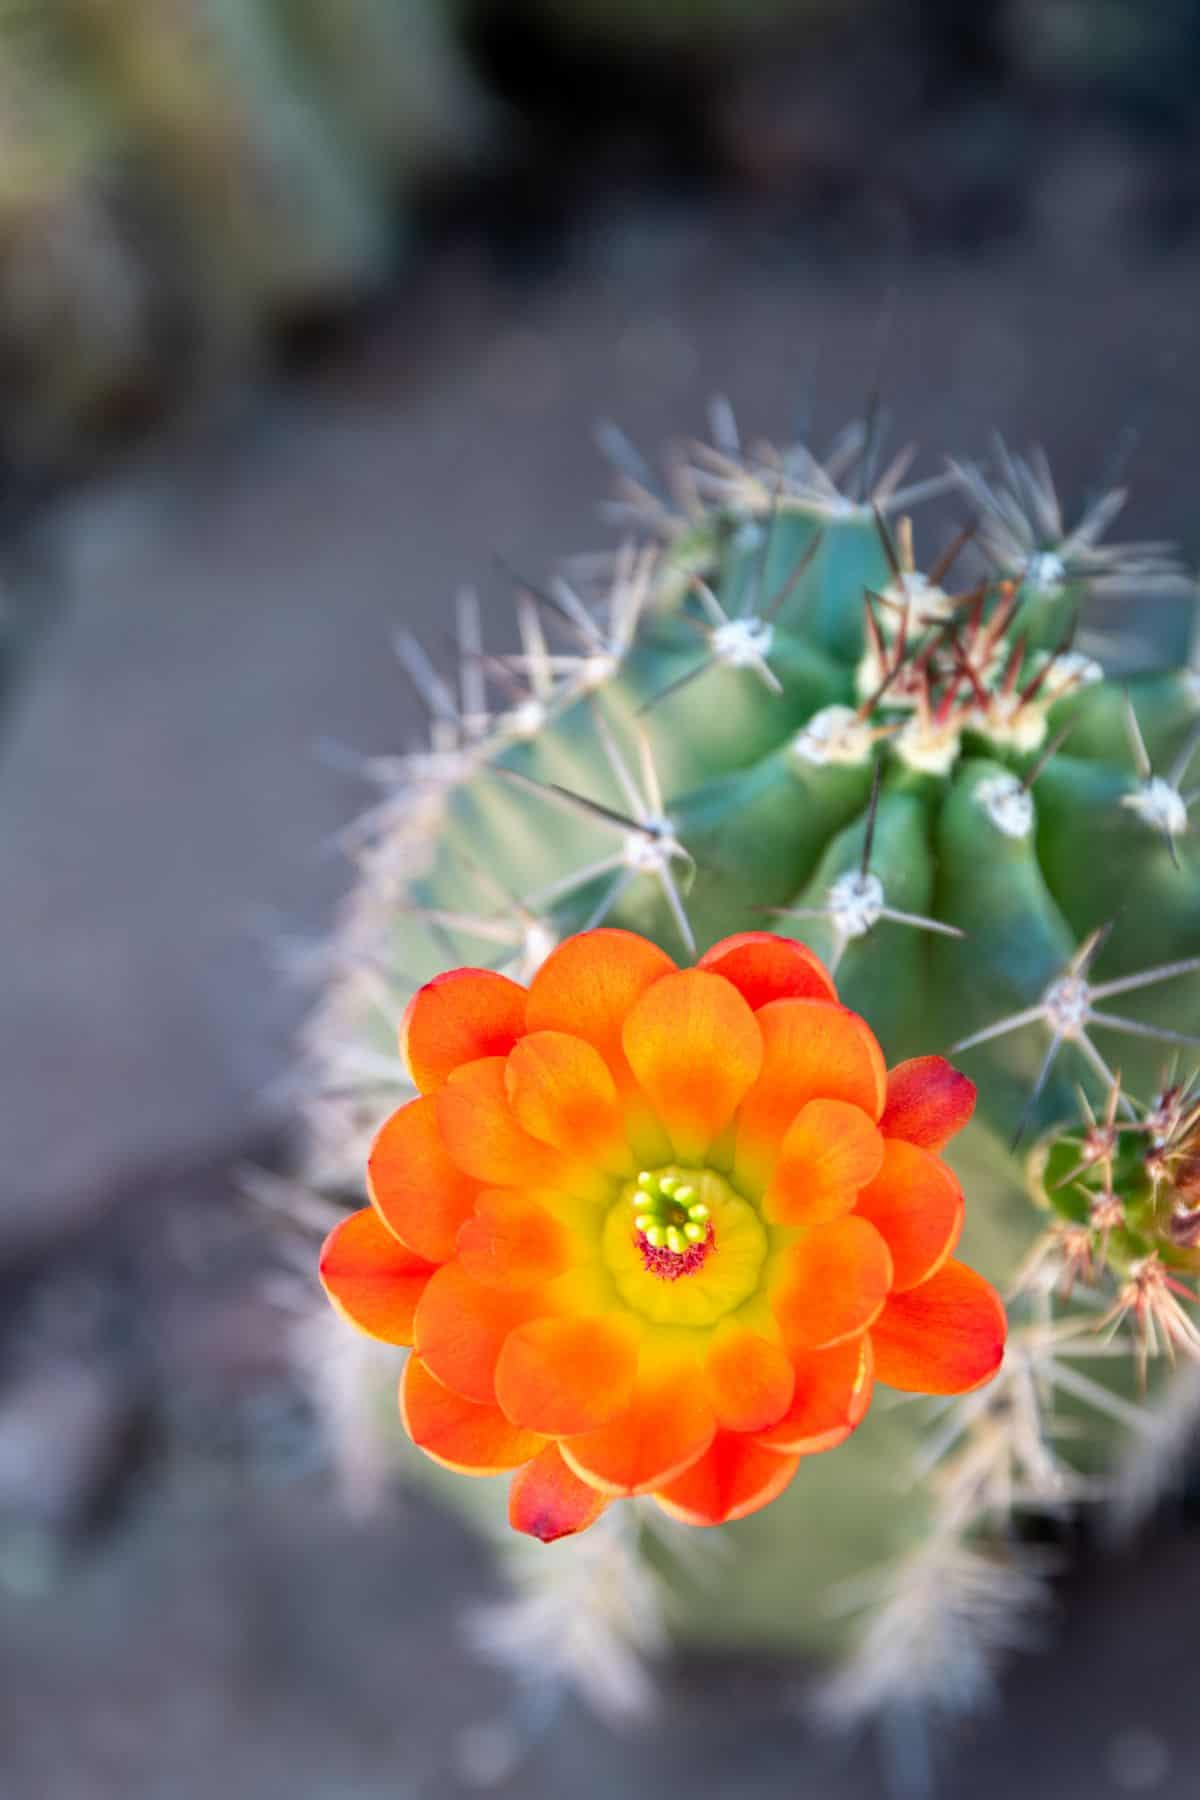 Flowering Echinocereus arizonicus ssp. arizonicus - Arizona hedgehog cactus